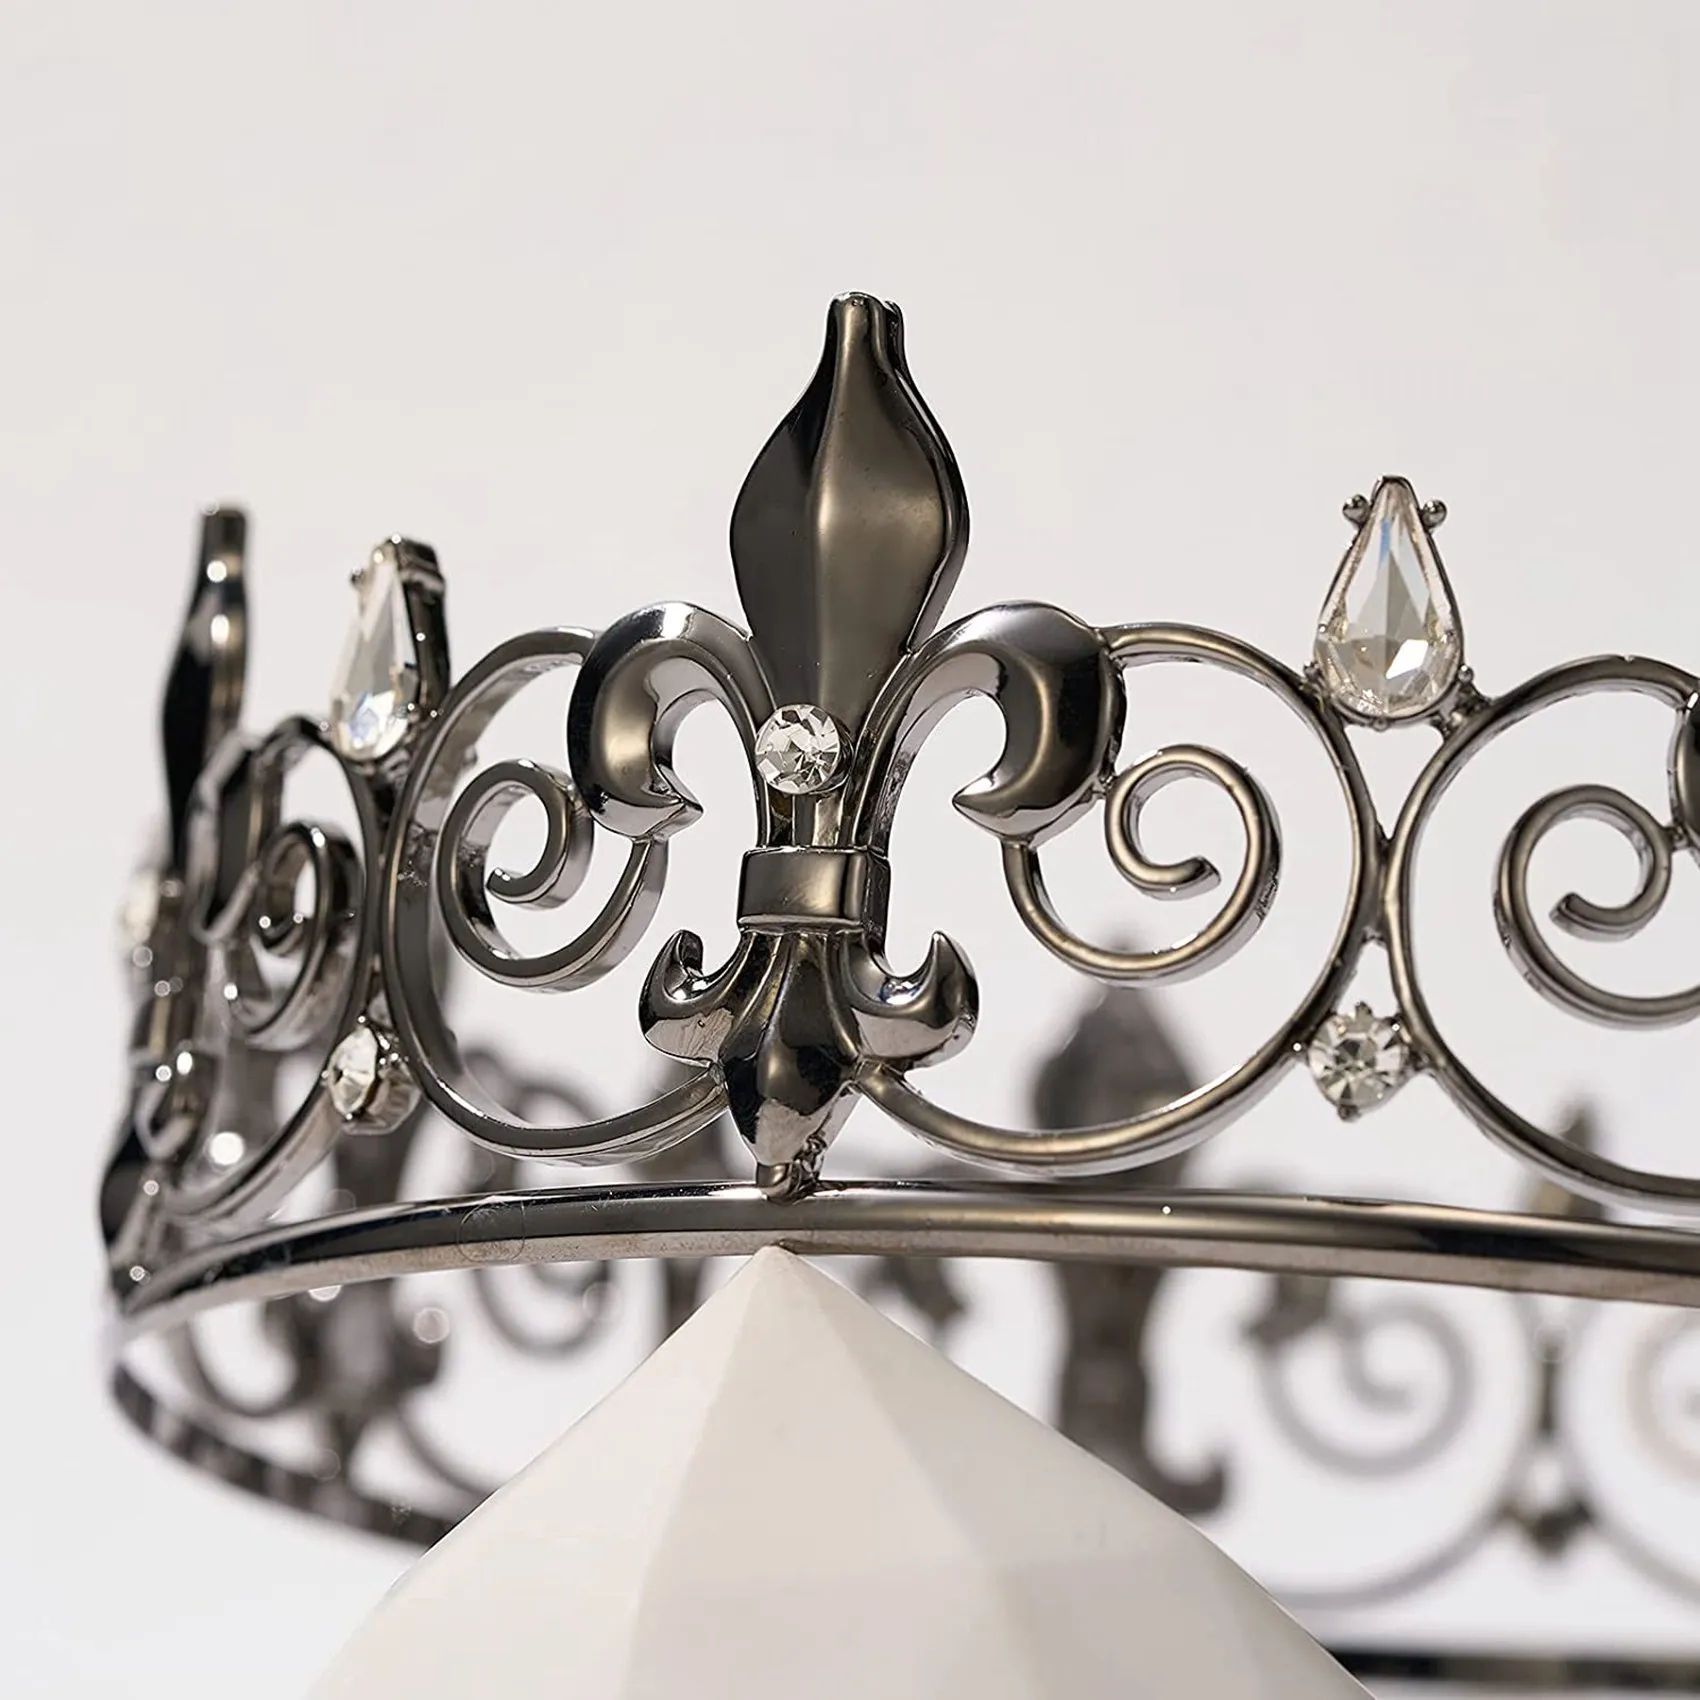 

Готическая Корона Full King-металлические короны и тиары для мужчин и мальчиков, головные уборы Goth Prince для выпускного, костюм для косплея на Хэллоуин